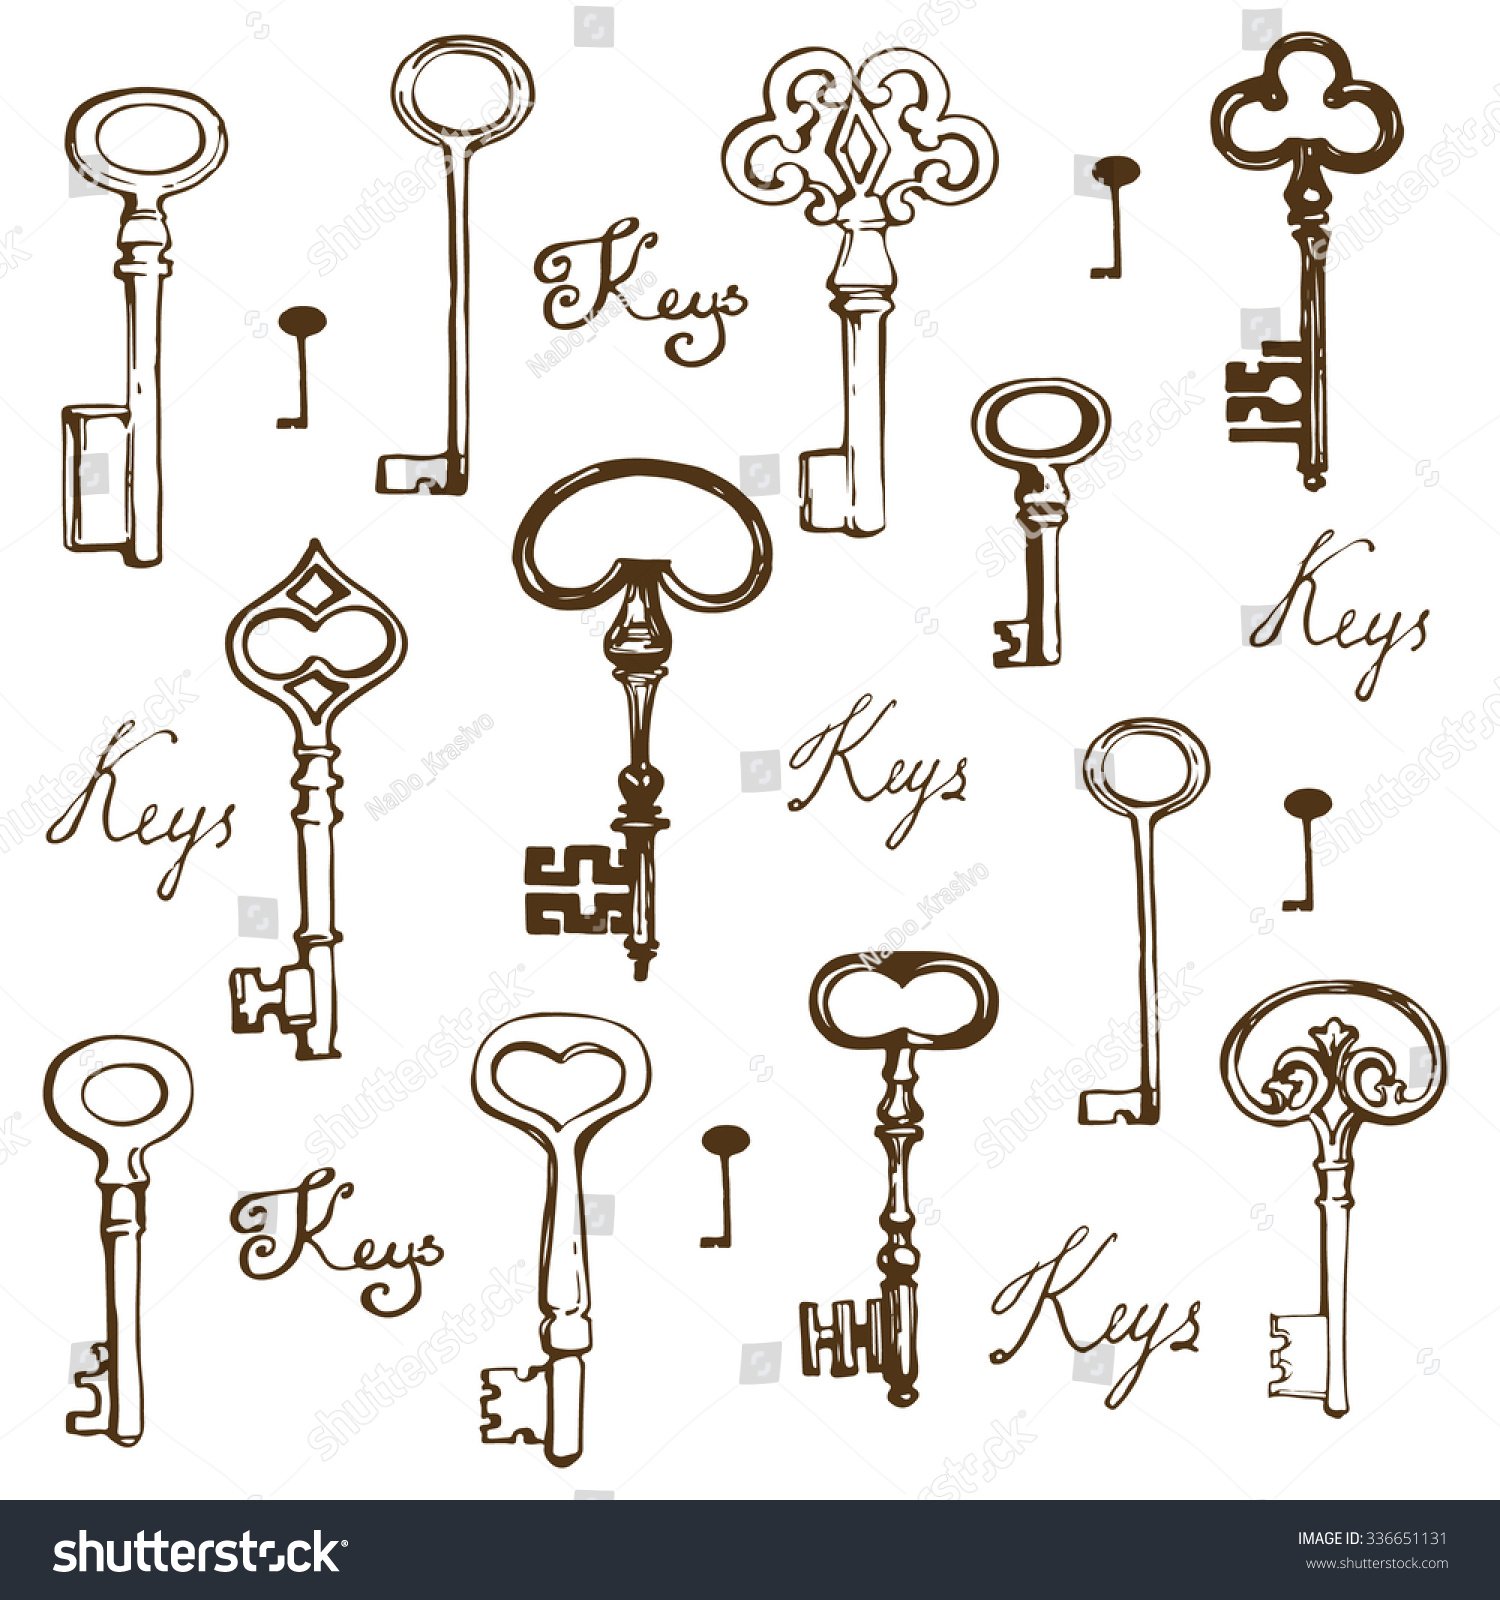 Hand Drawn Keys Set Vector Illustration Stock Vector 336651131 ...